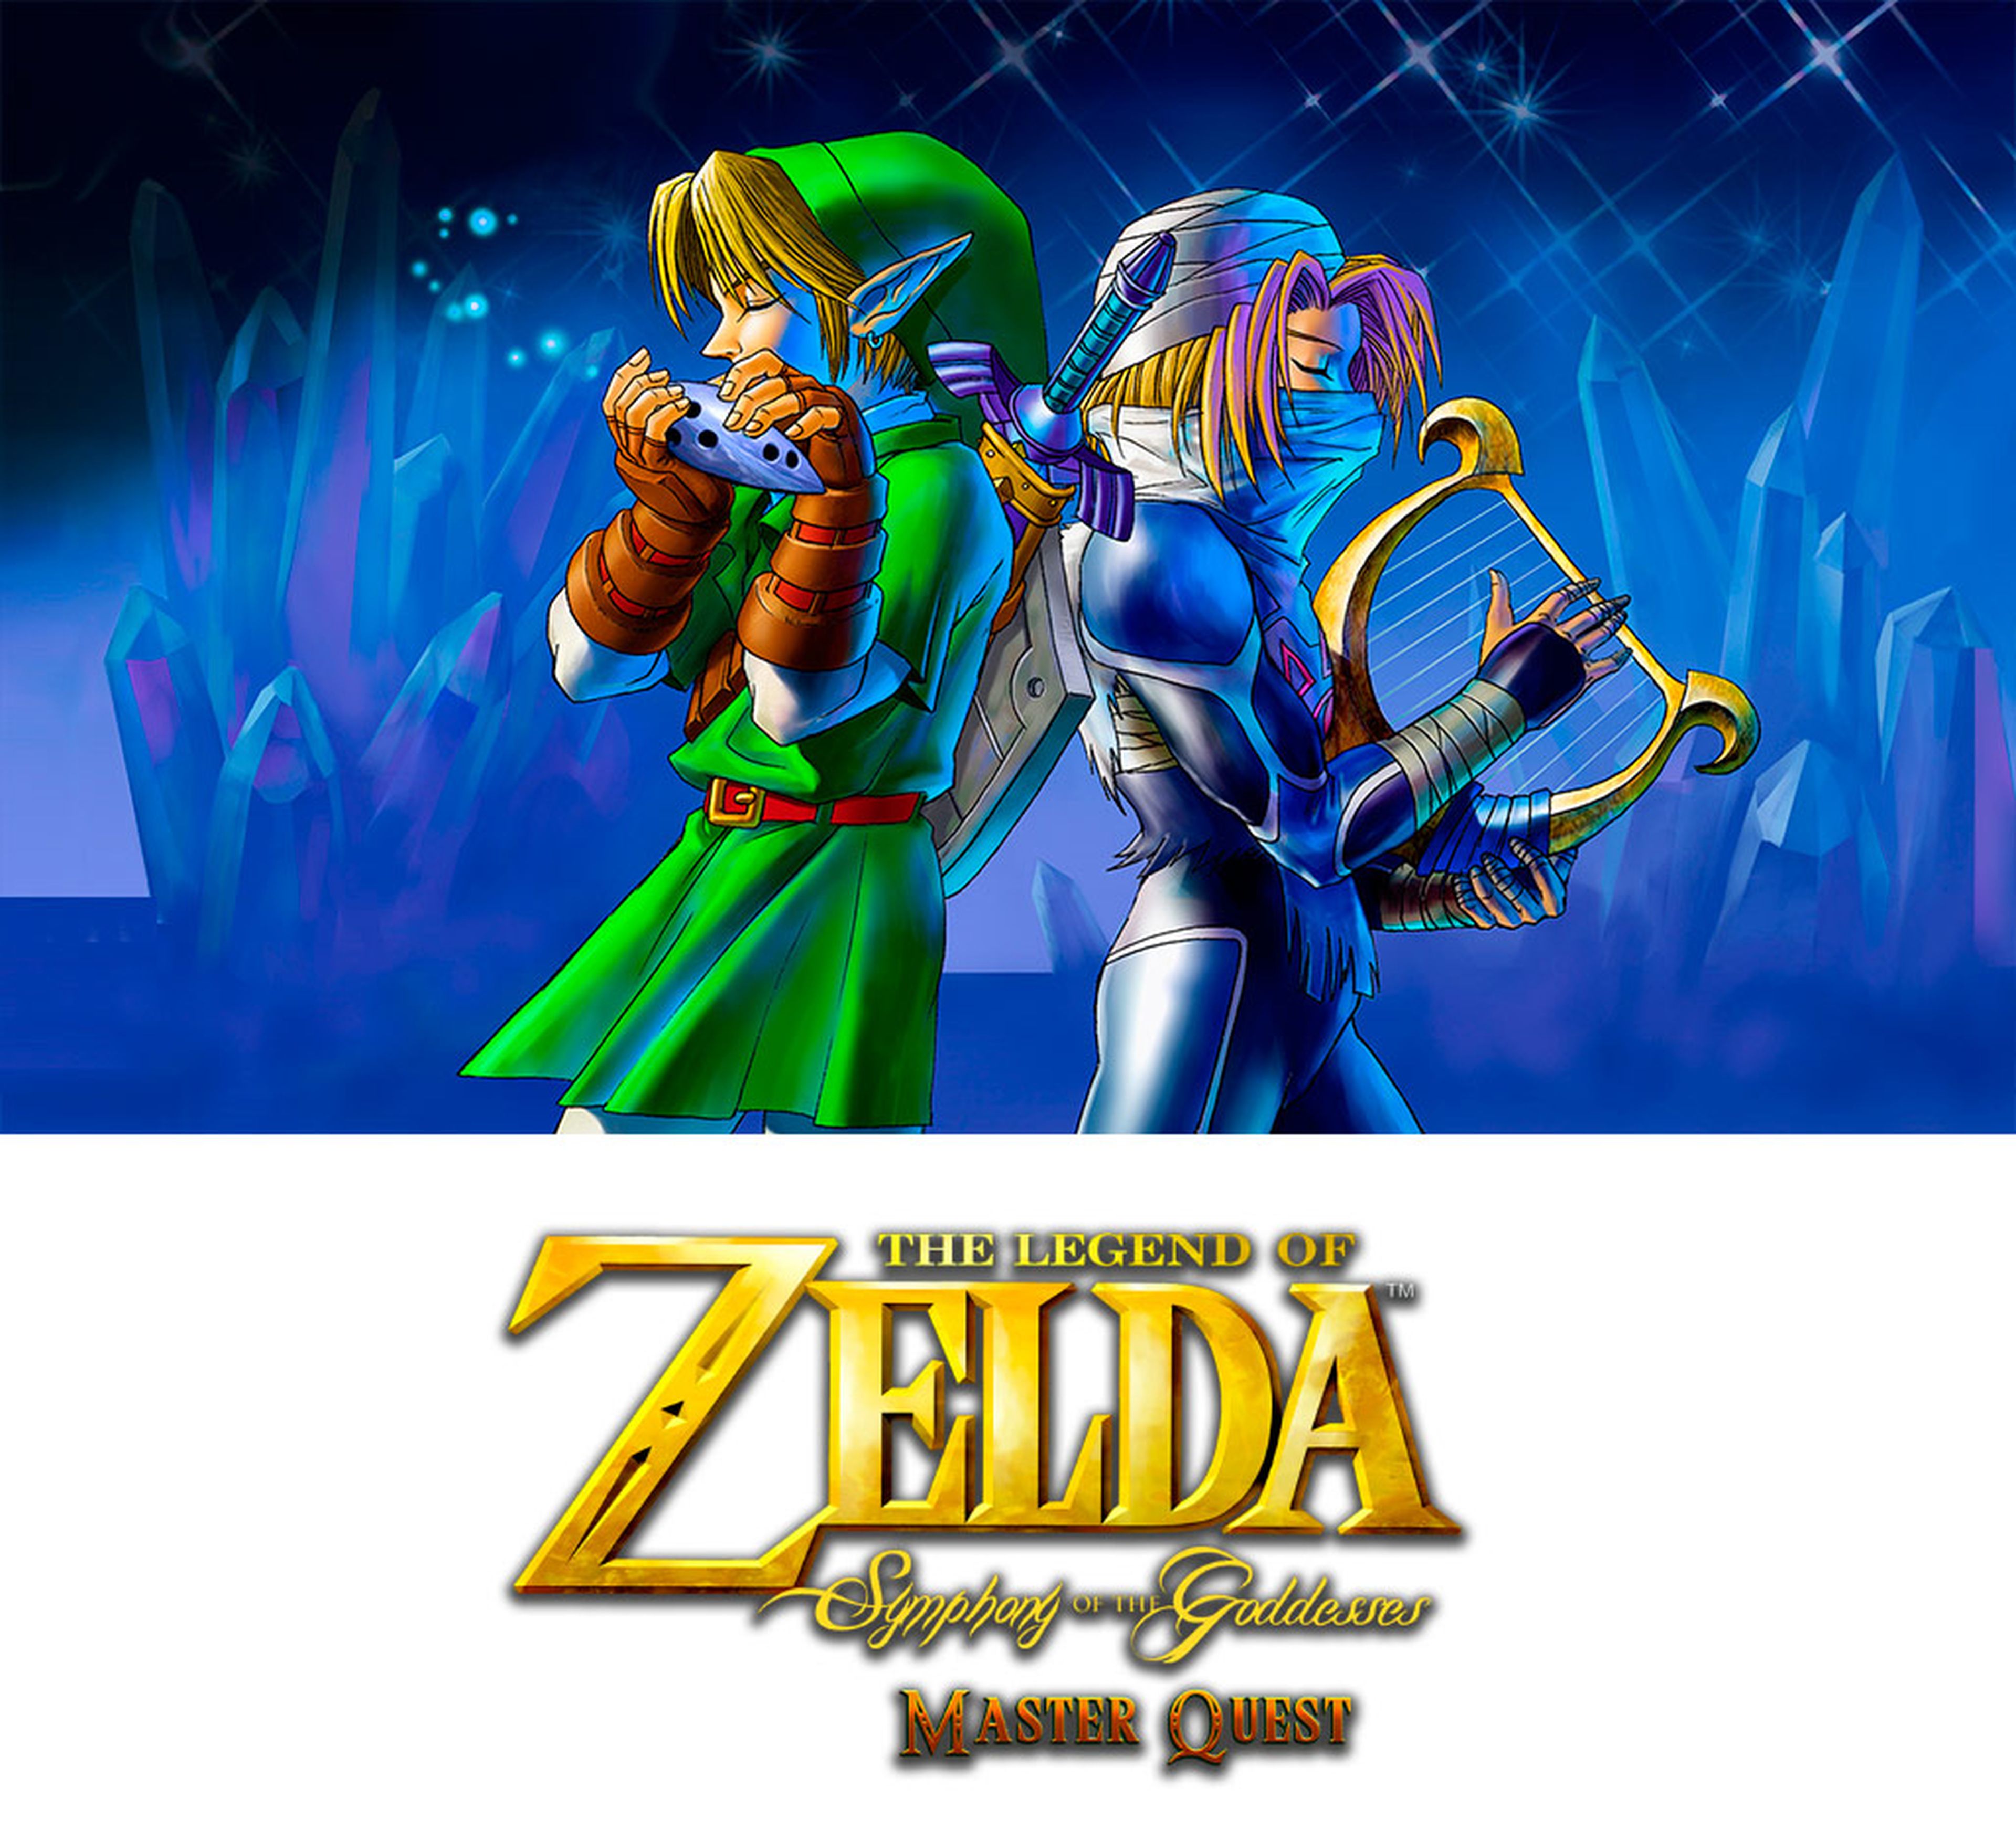 The Legend of Zelda: Symphony of Goddesses